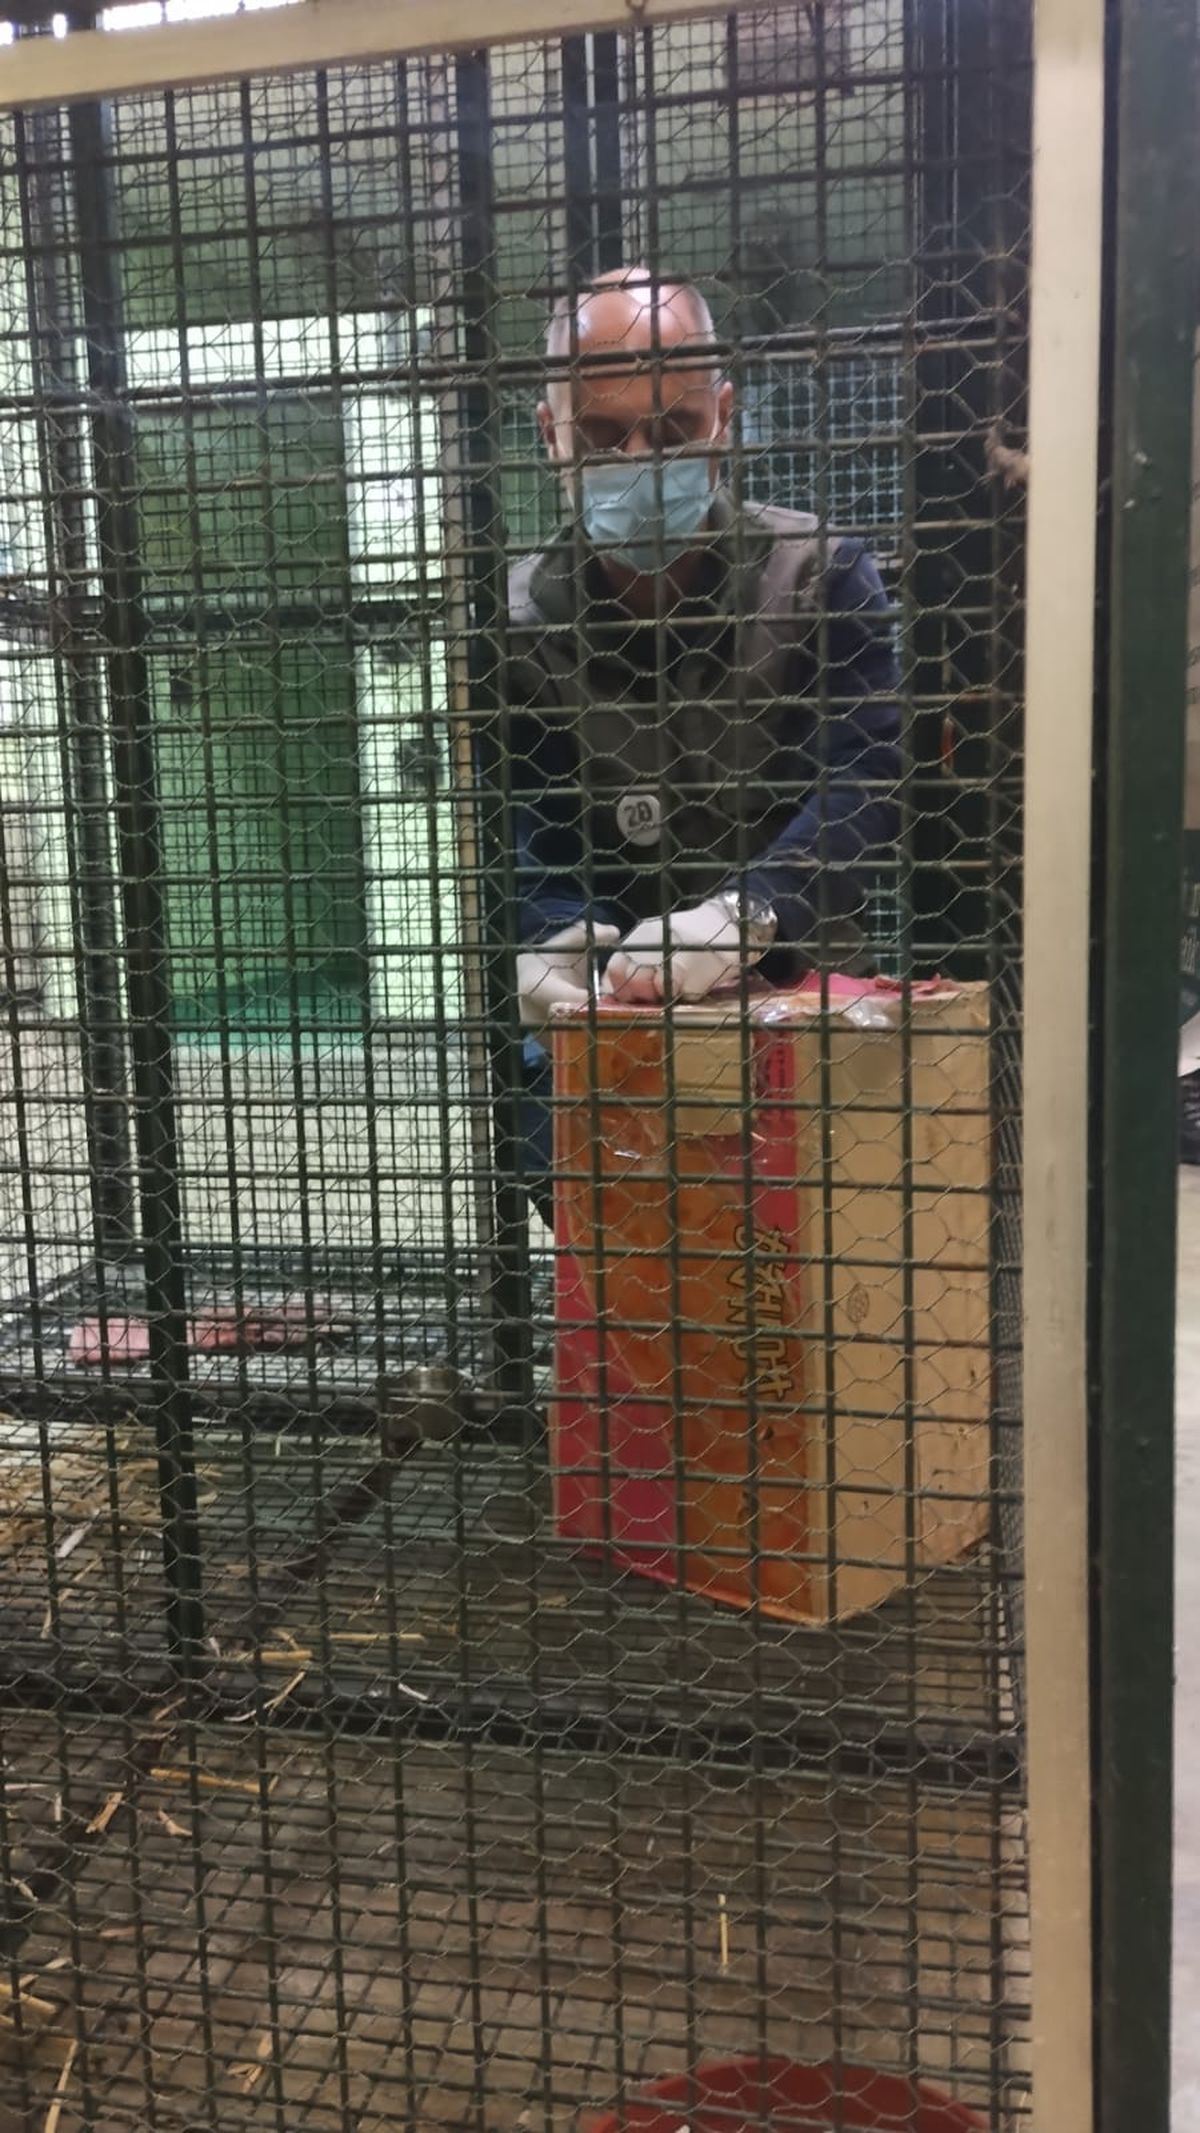 Lanús: detuvieron a un vecino que vendía monos por Facebook y los entregaba en la estación